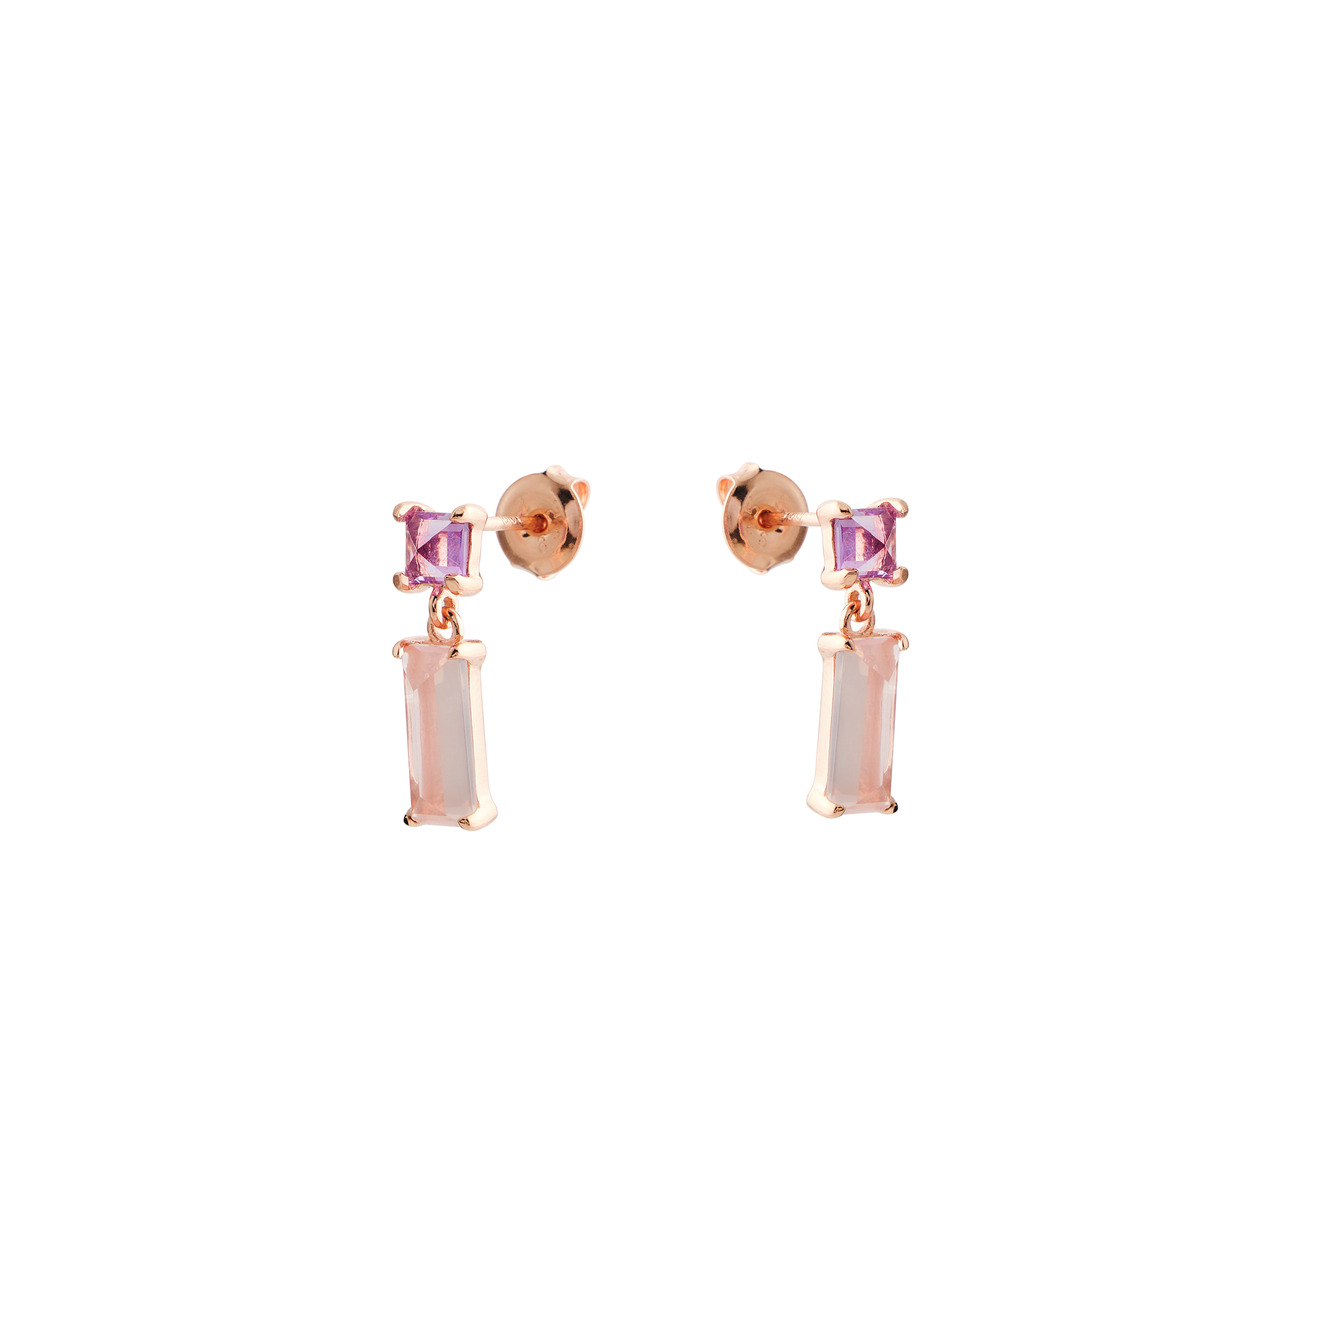 Wisteria Gems Позолоченные серьги с квадратным аметистом и прямоугольным розовым кварцем wisteria gems позолоченные серьги капли с аметистом